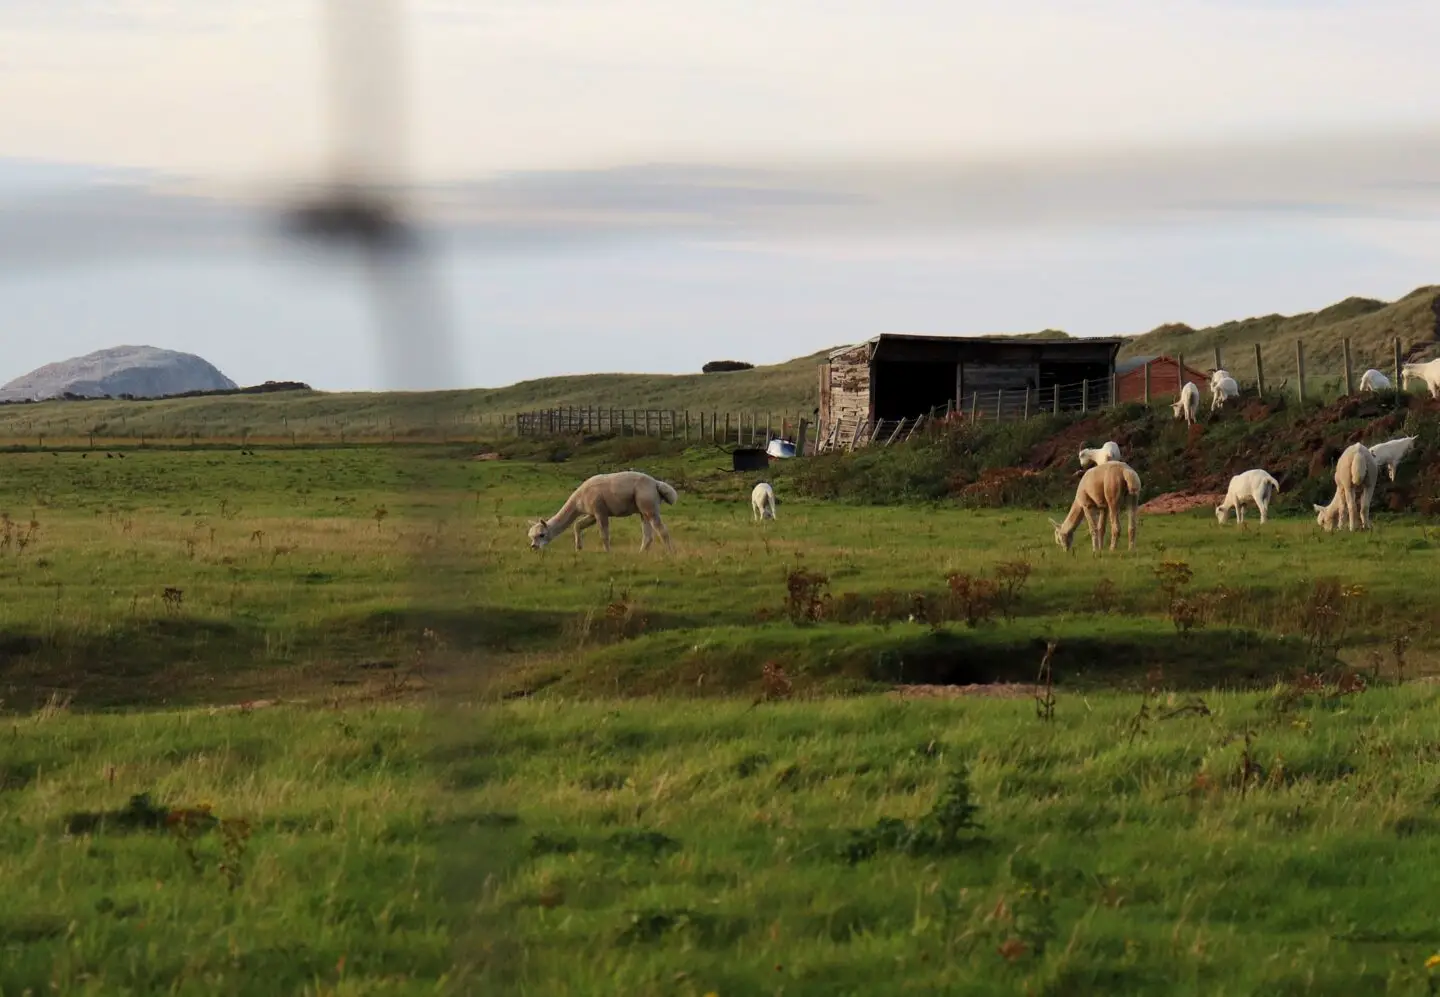 llamas in a field